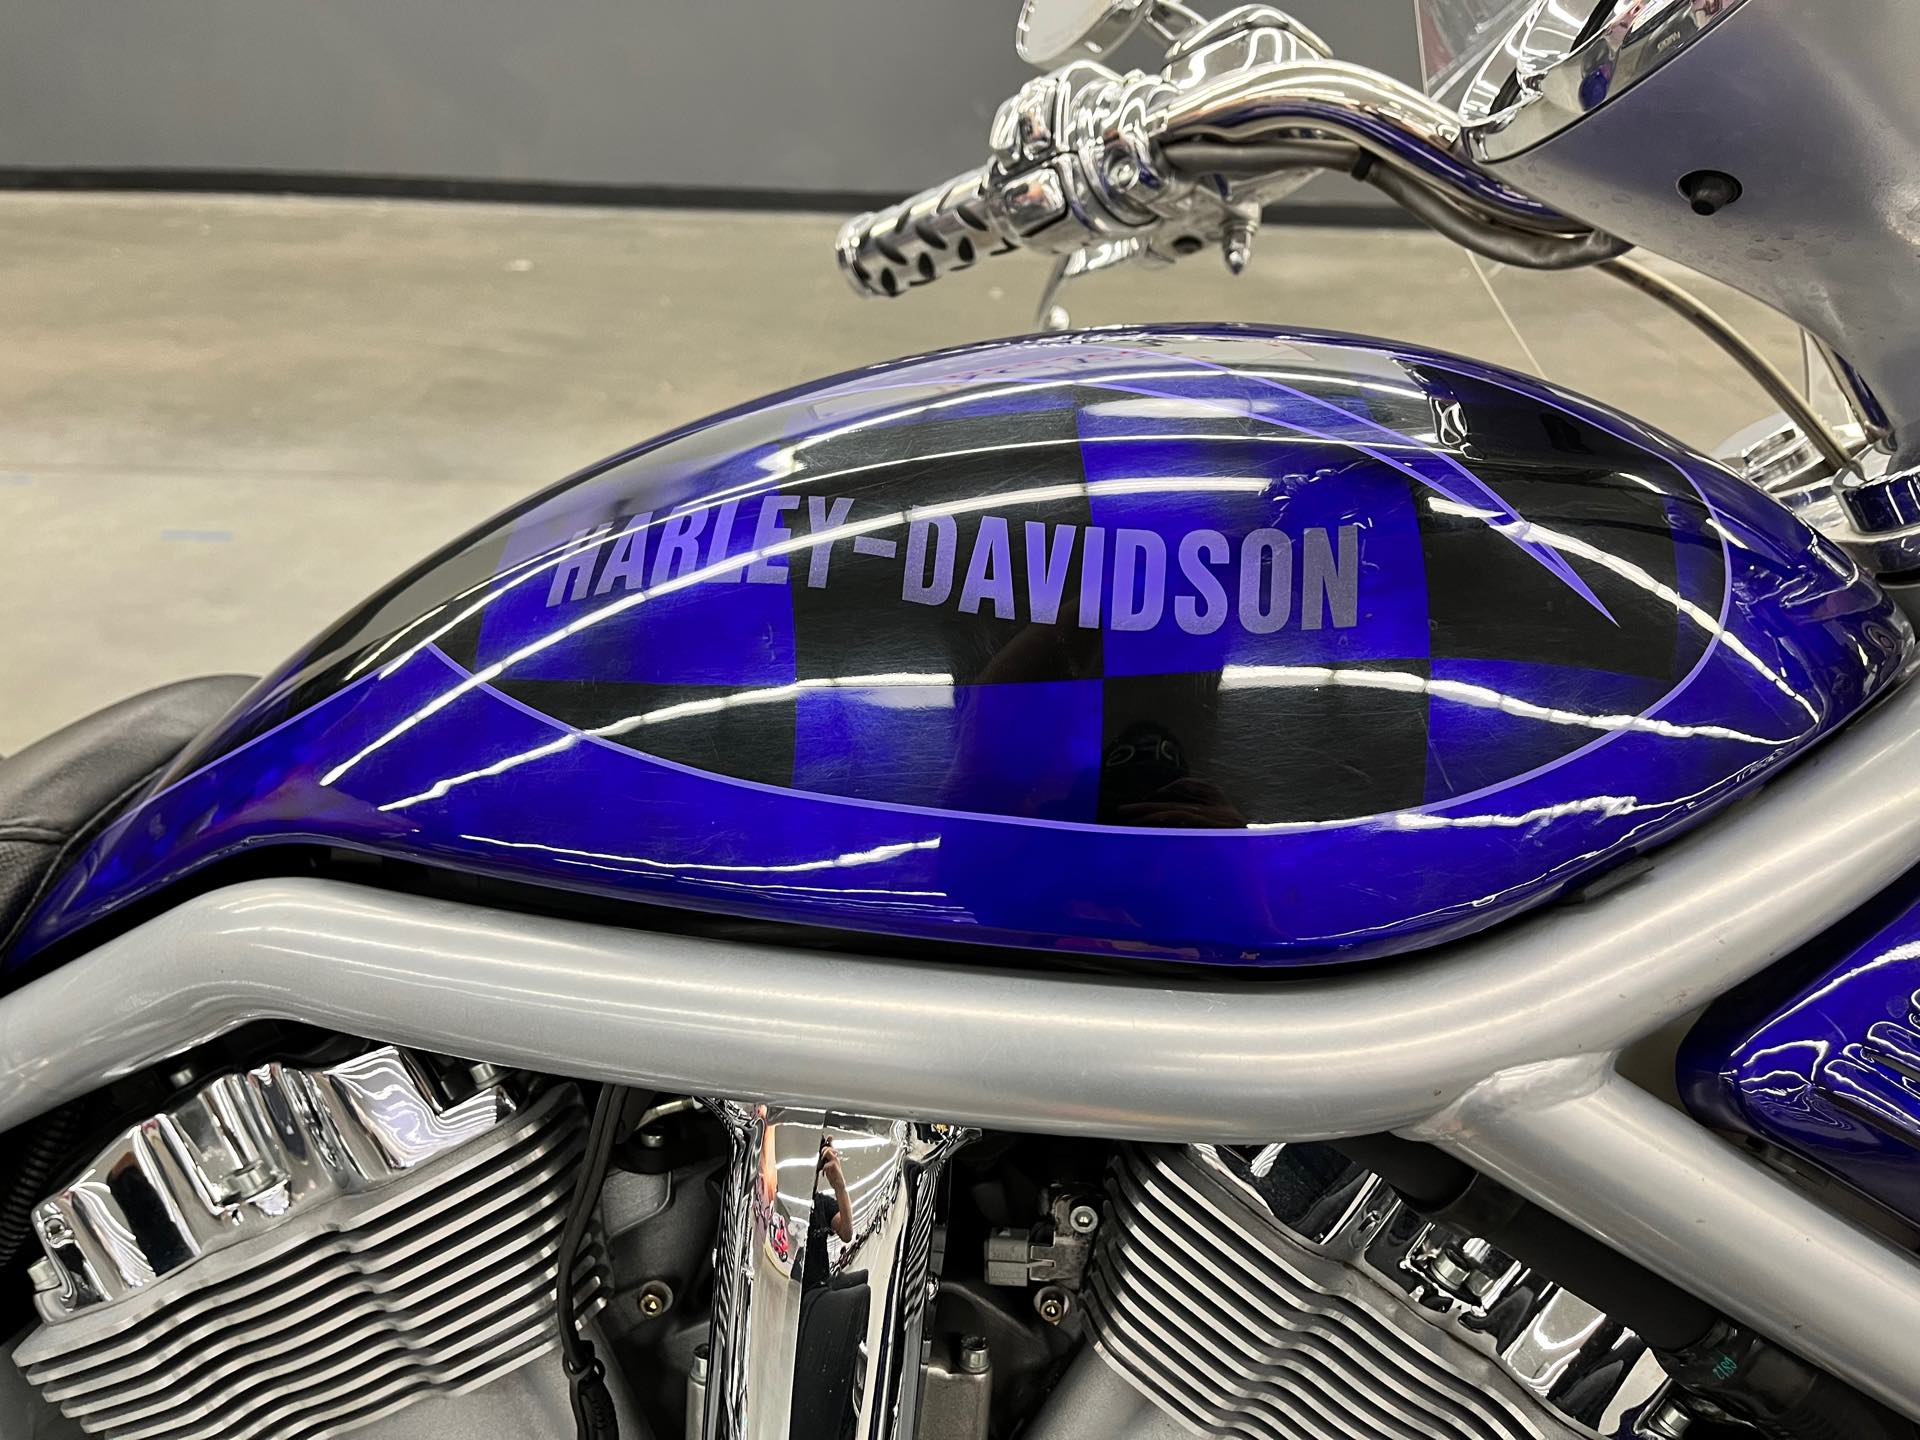 2002 Harley-Davidson VRSCA at Aces Motorcycles - Denver